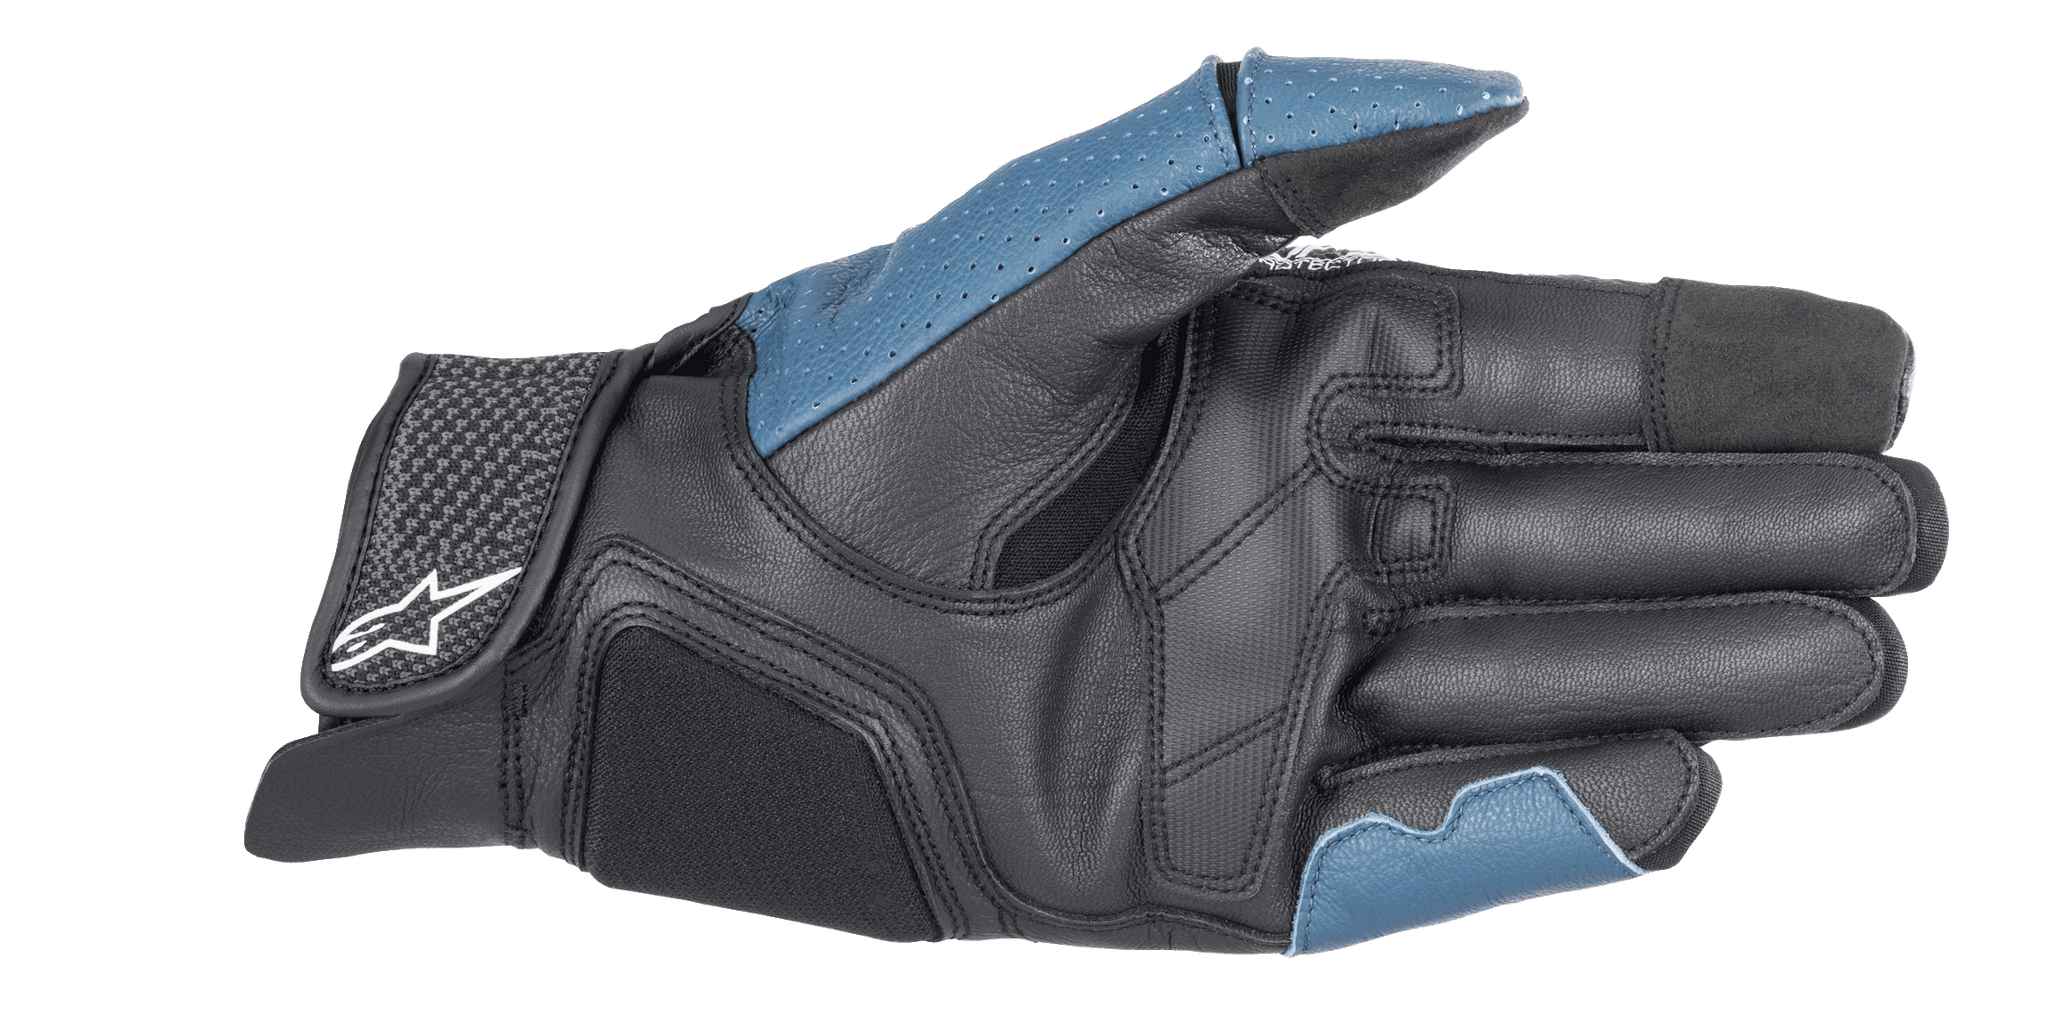 Morph Sport Gloves